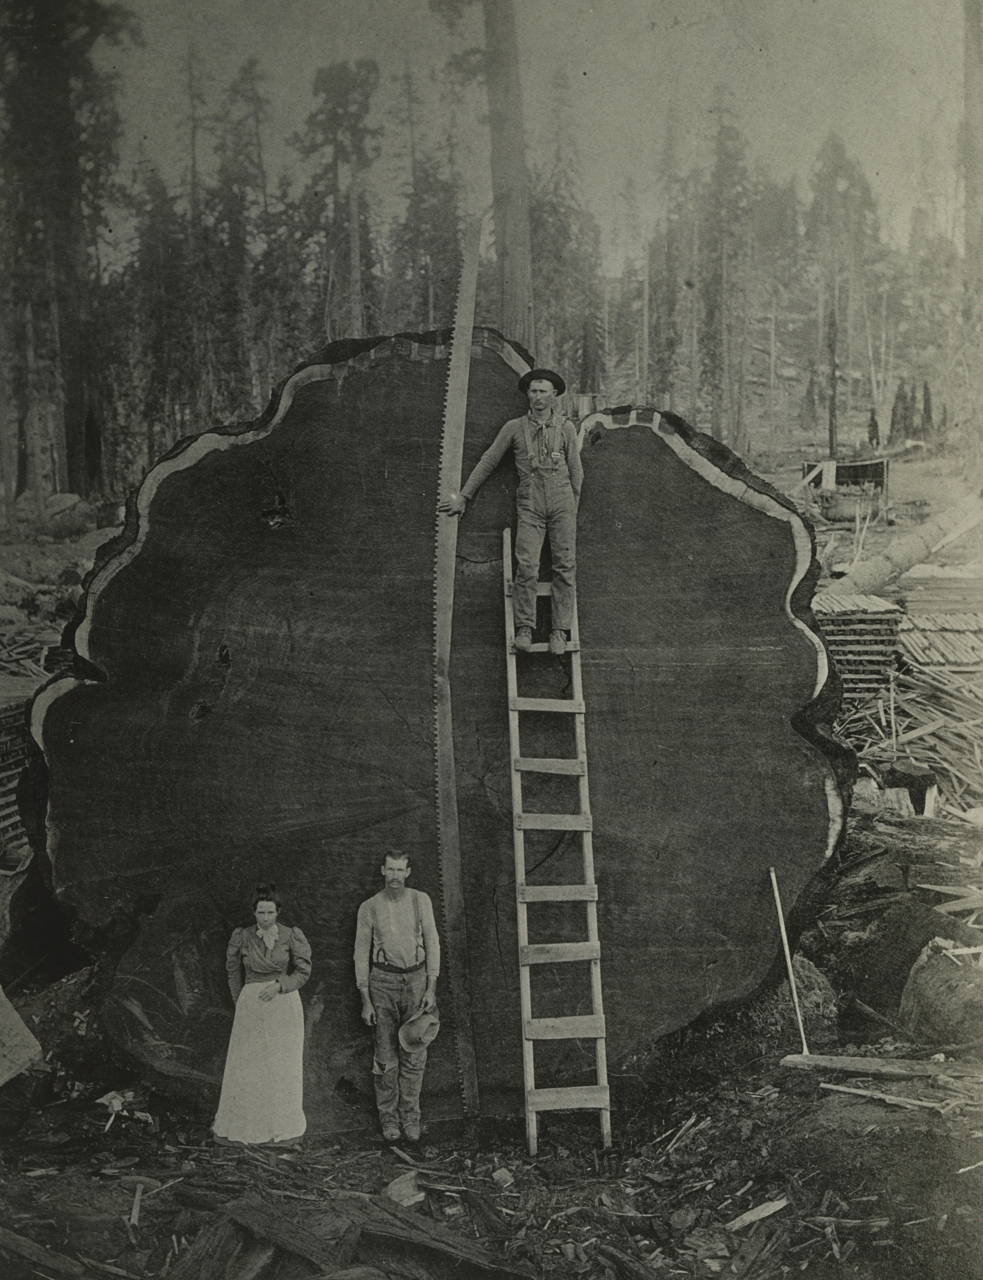  |N. E. Beckwith, Holzarbeiter vor einem gefällten Mammutbaum, Sequoia National Park, Kalifornien, USA, 1892 (© National Geographic Image Collection)